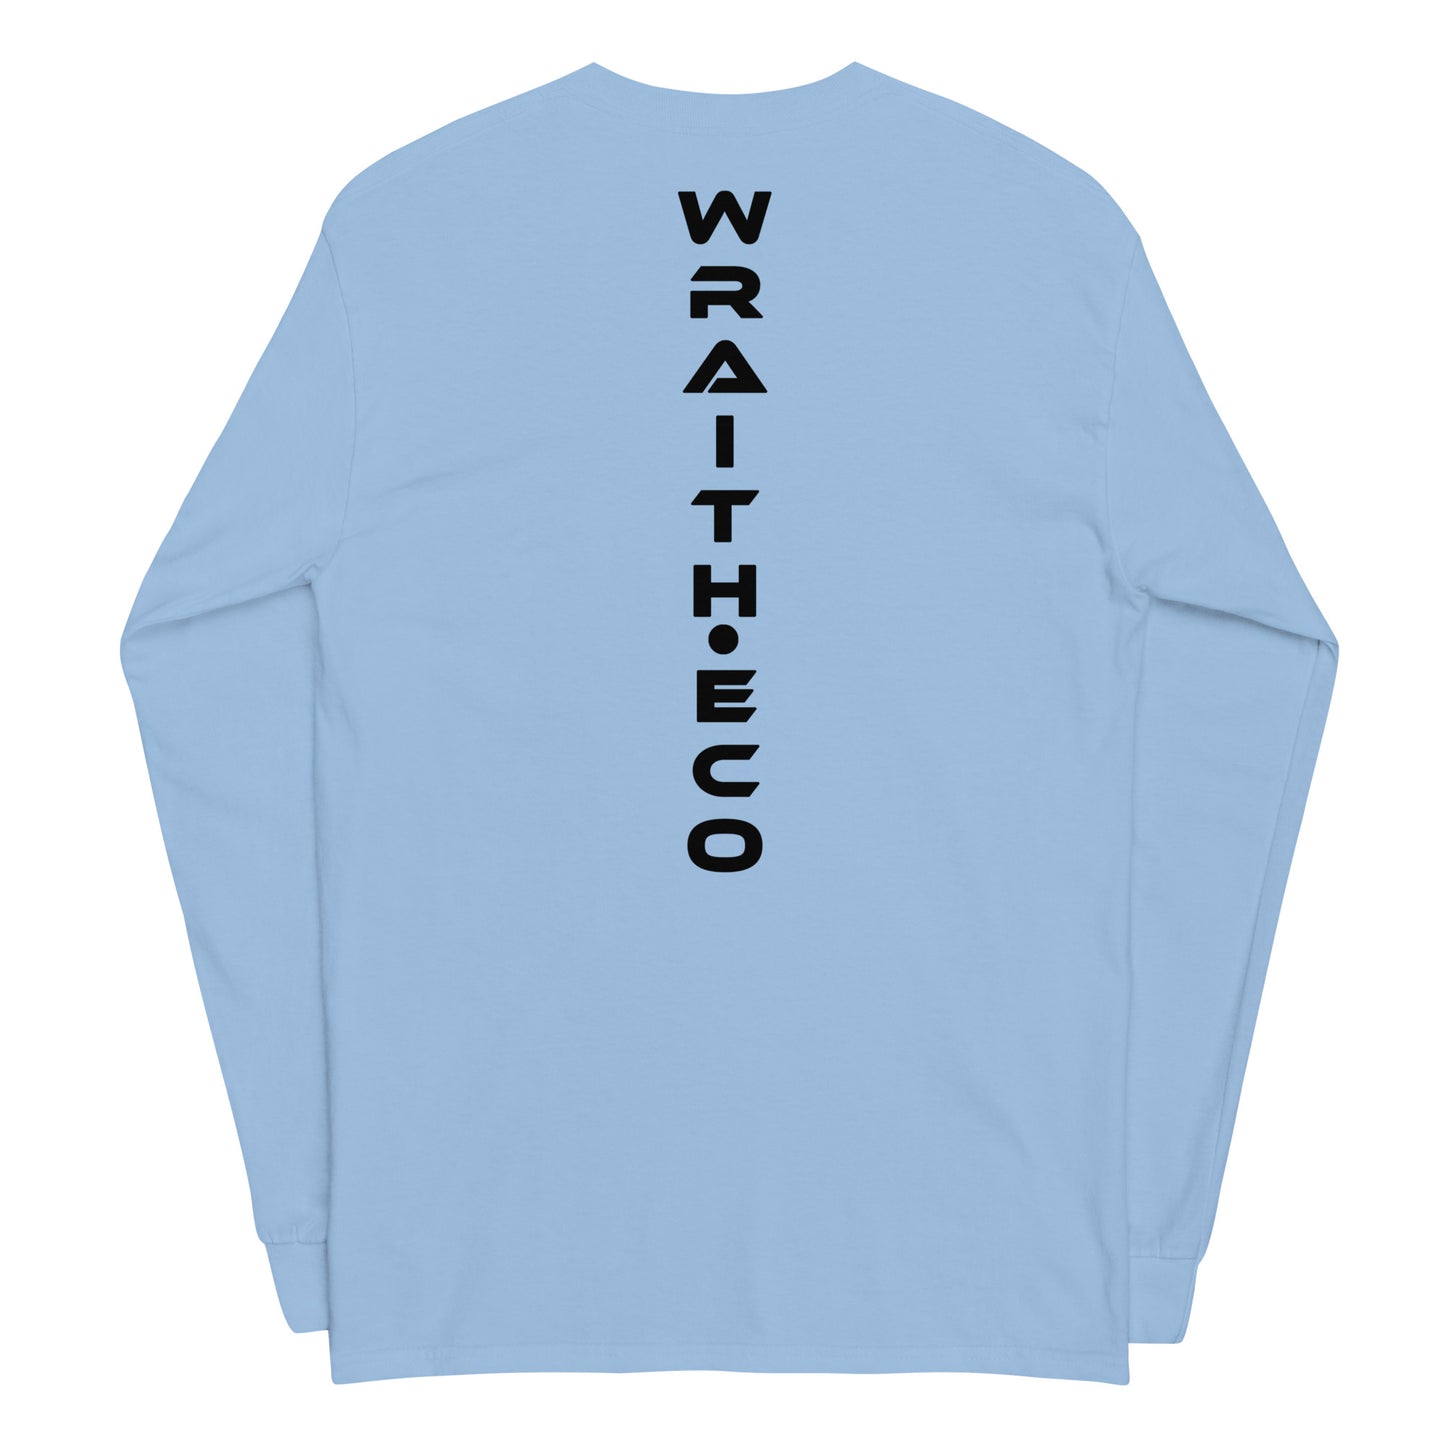 Wraith Eco Men’s Long Sleeve Shirt